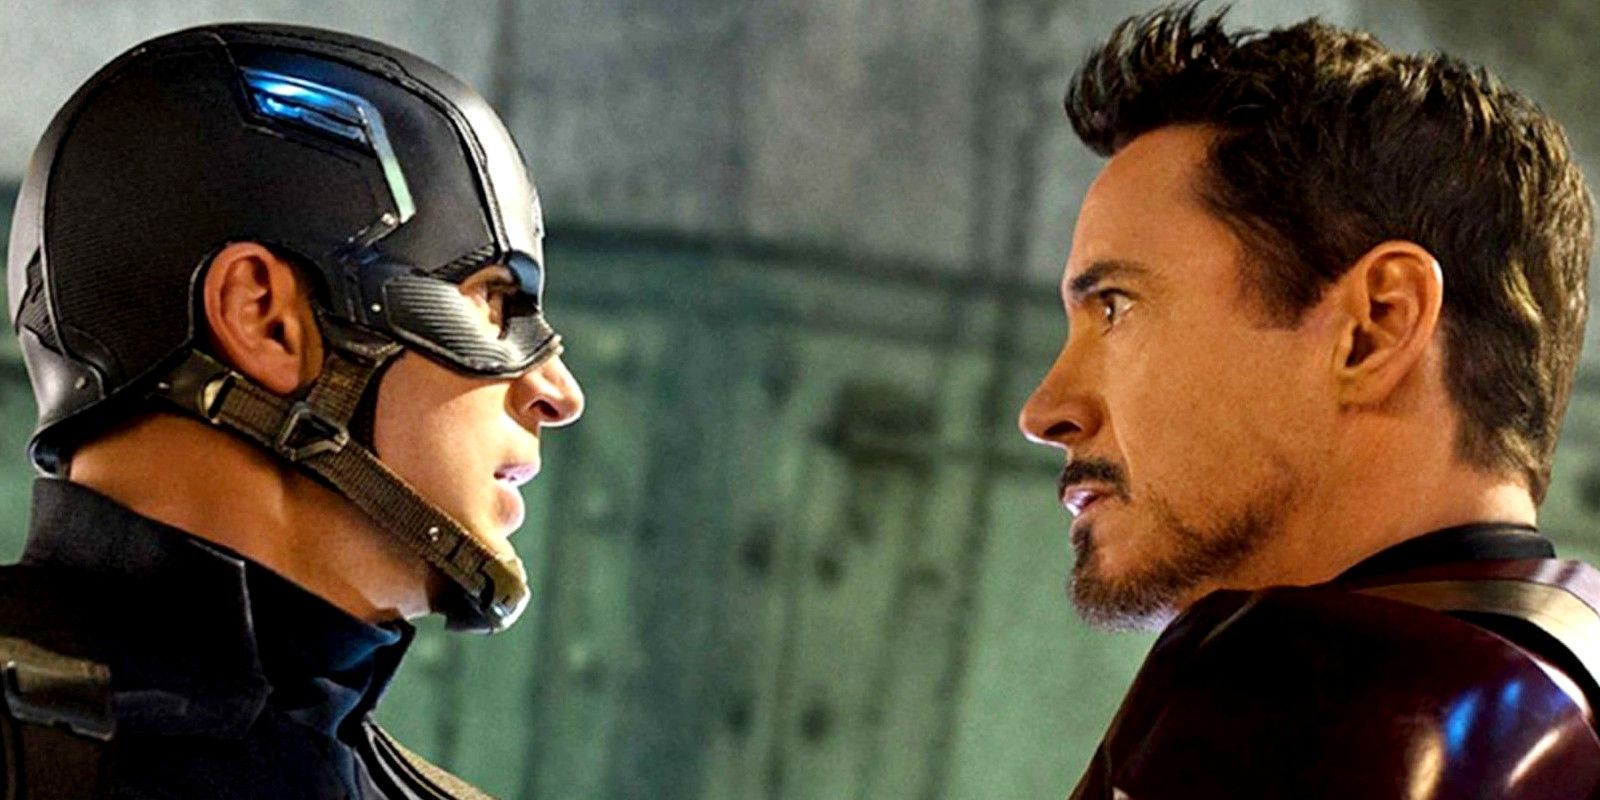 Iron Man vs Captain American in Civil War